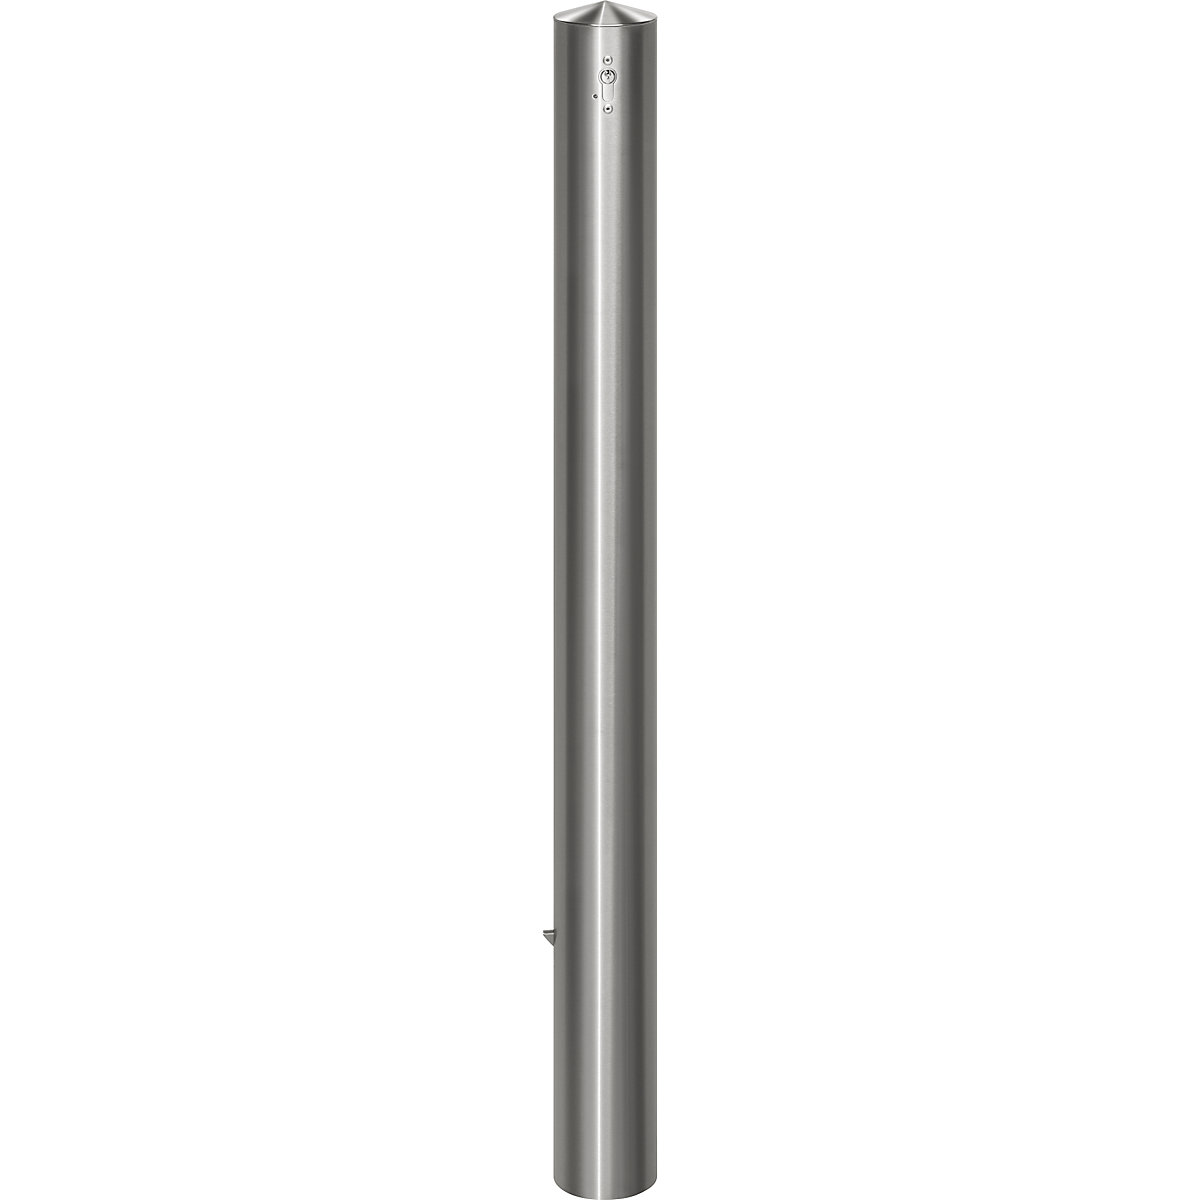 Stup za ograđivanje od nehrđajućeg čelika, s konusnom glavom, za betoniranje s podnom čahurom, Ø 102 mm, profilni cilindar-1